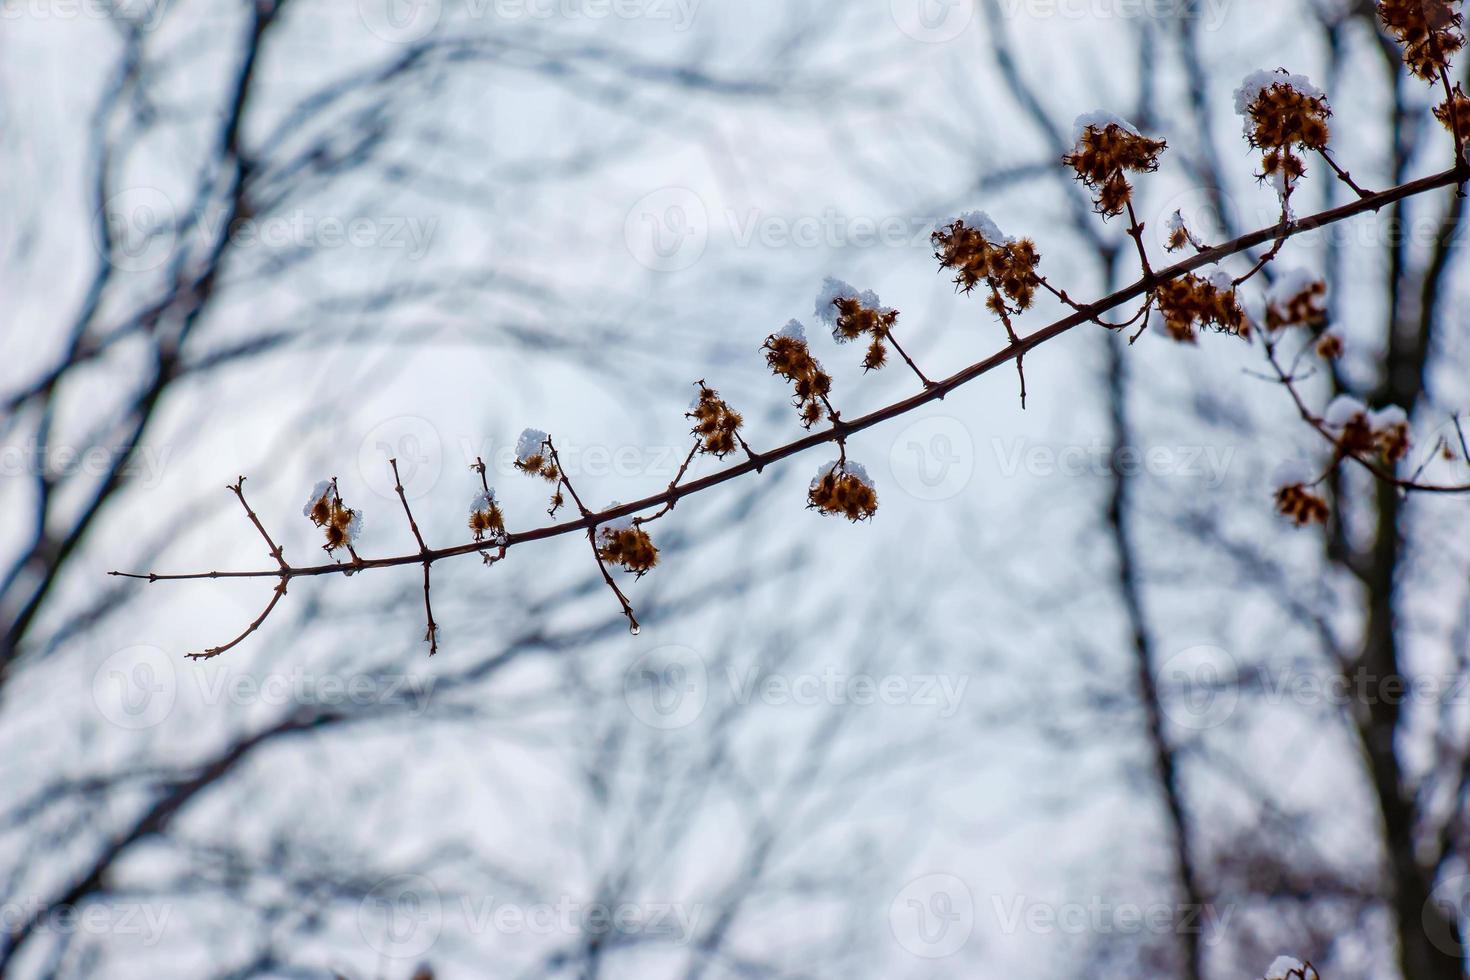 kolkwitzia amabilis est une espèce de plante dans le caprifoliacées famille. une à feuilles caduques arbuste connu collectivement comme beauté buisson dans hiver, couvert dans neige. photo